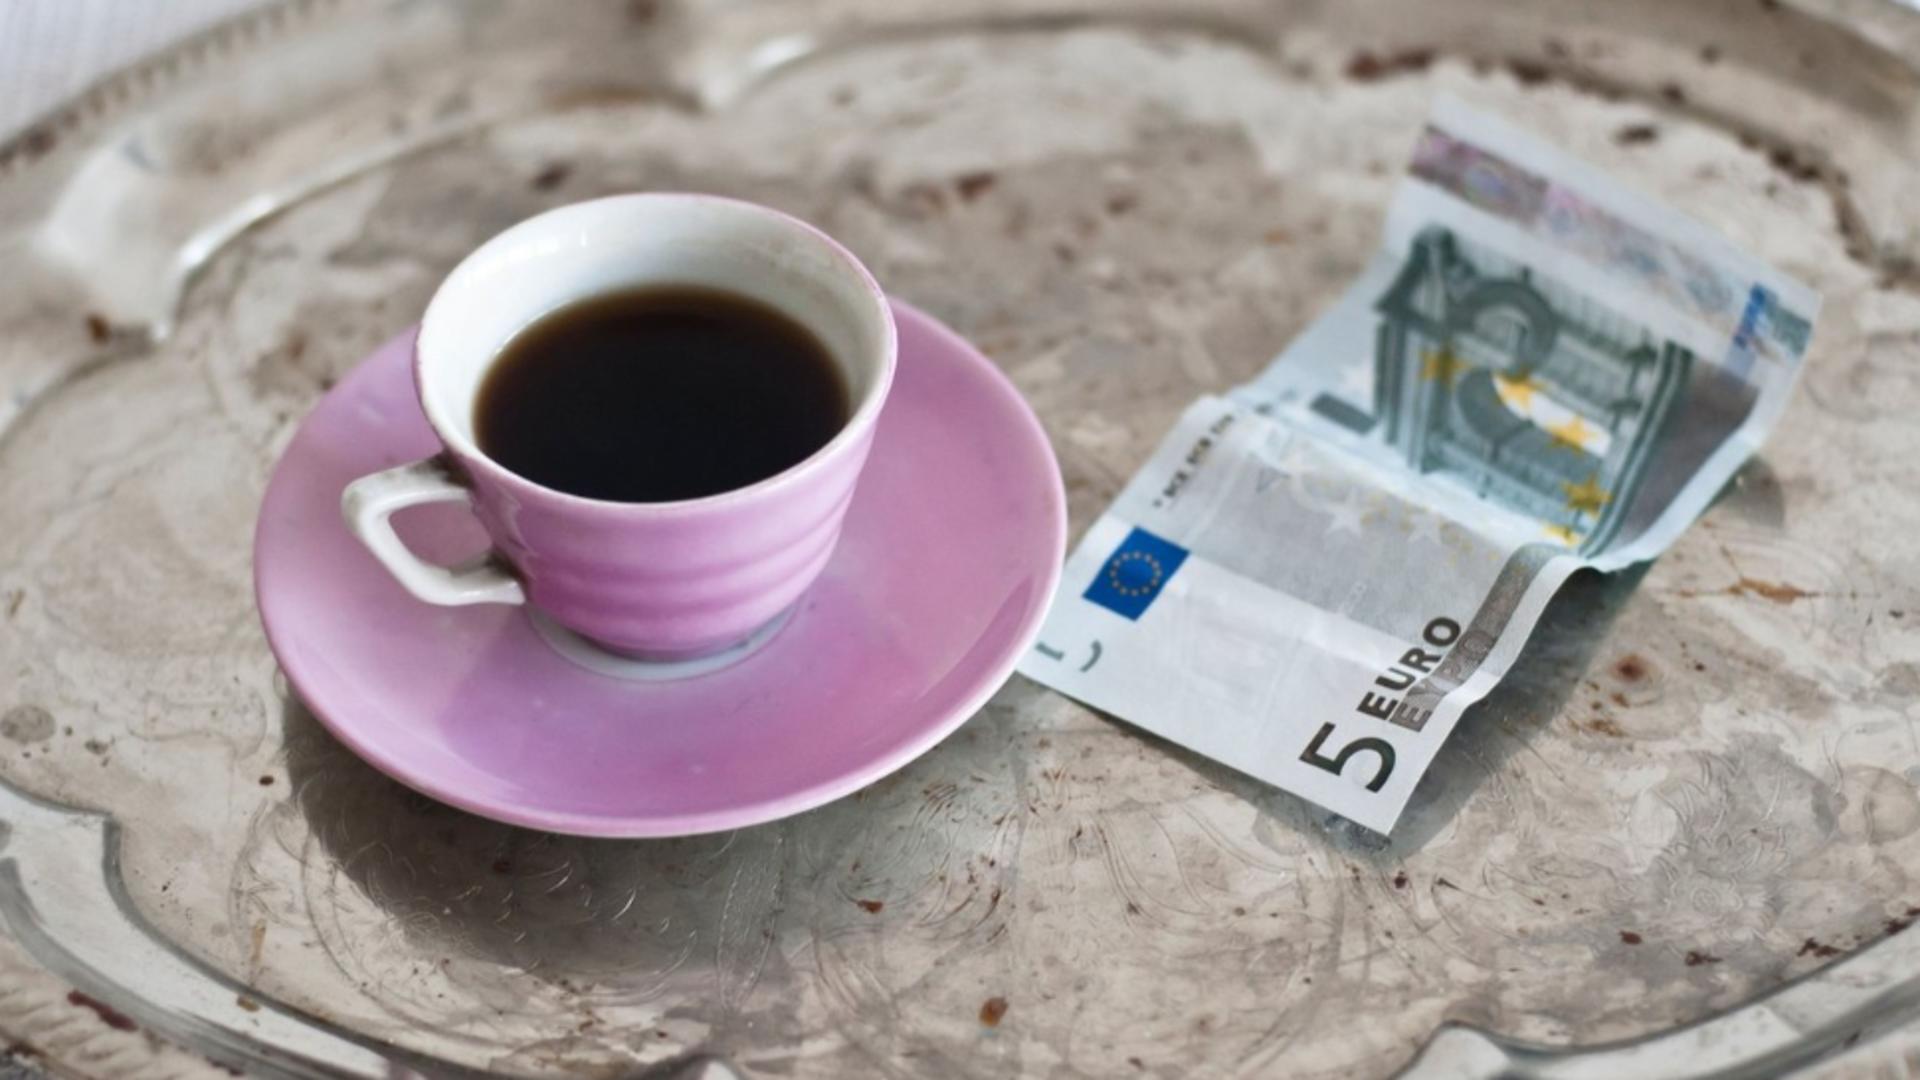 Nemții au ajuns să bea cafea pe datorie: “Pensiile sunt o bătaie de joc, toate s-au scumpit” – dezvăluirile unei românce din Germania